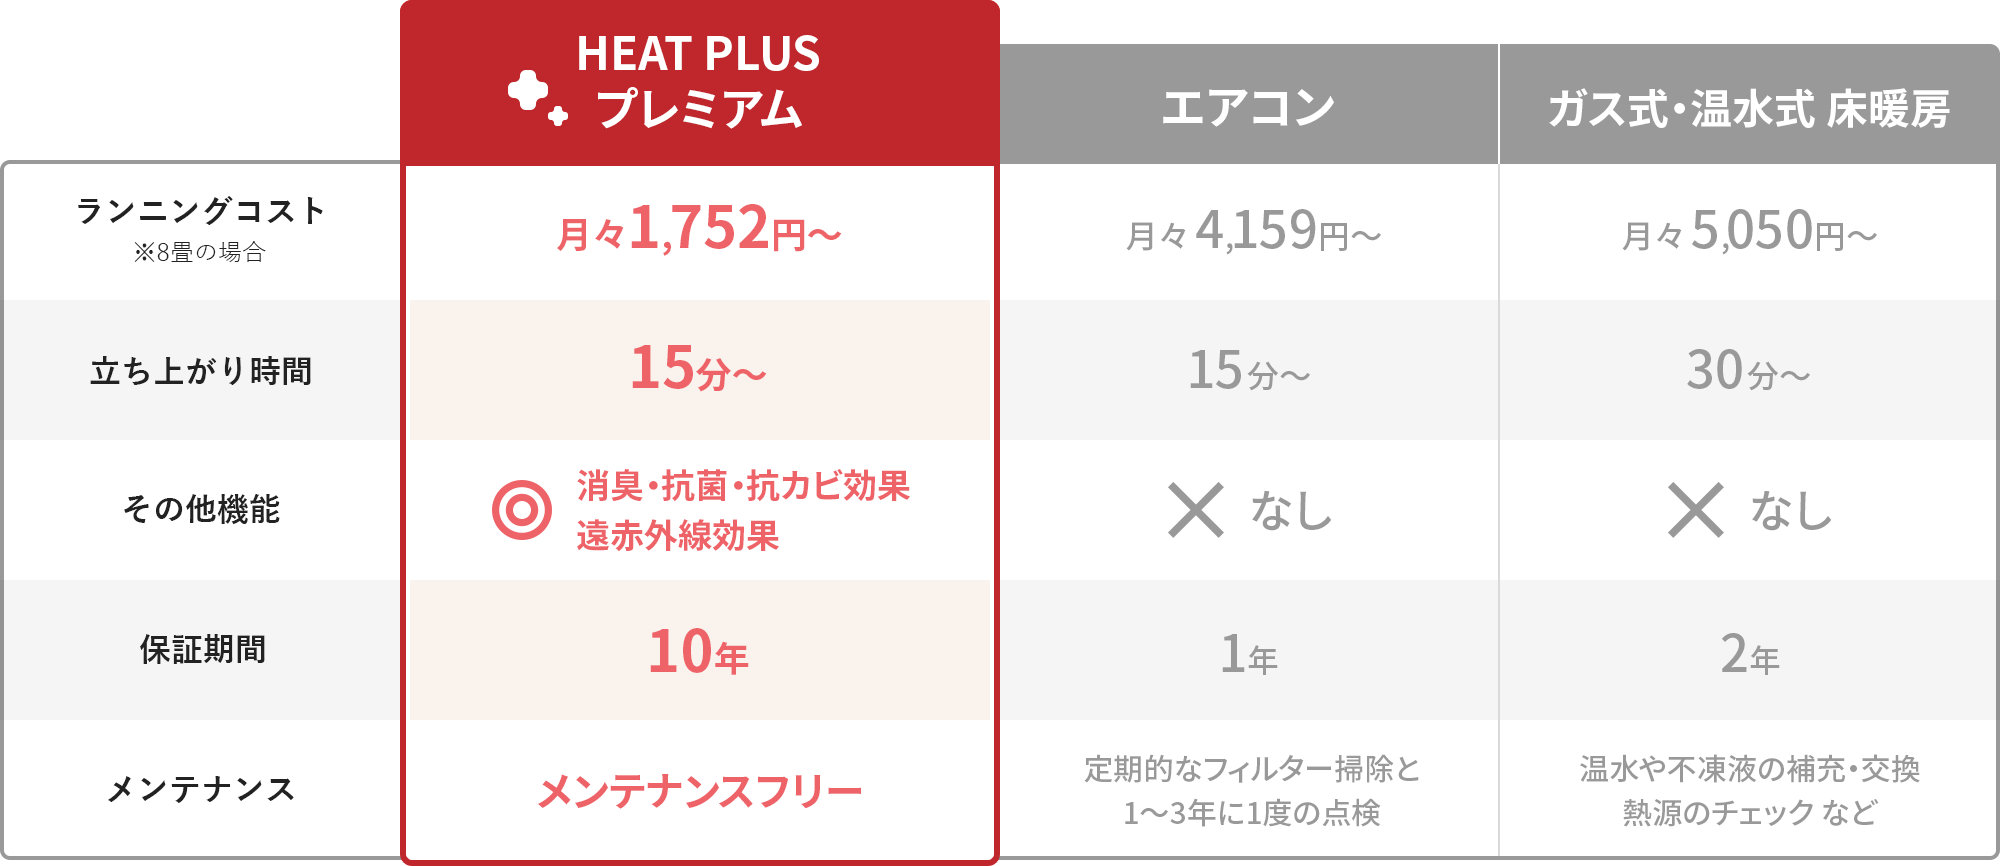 ヒートプラスプレミアムとエアコン、ガス式・温水式床暖房の比較